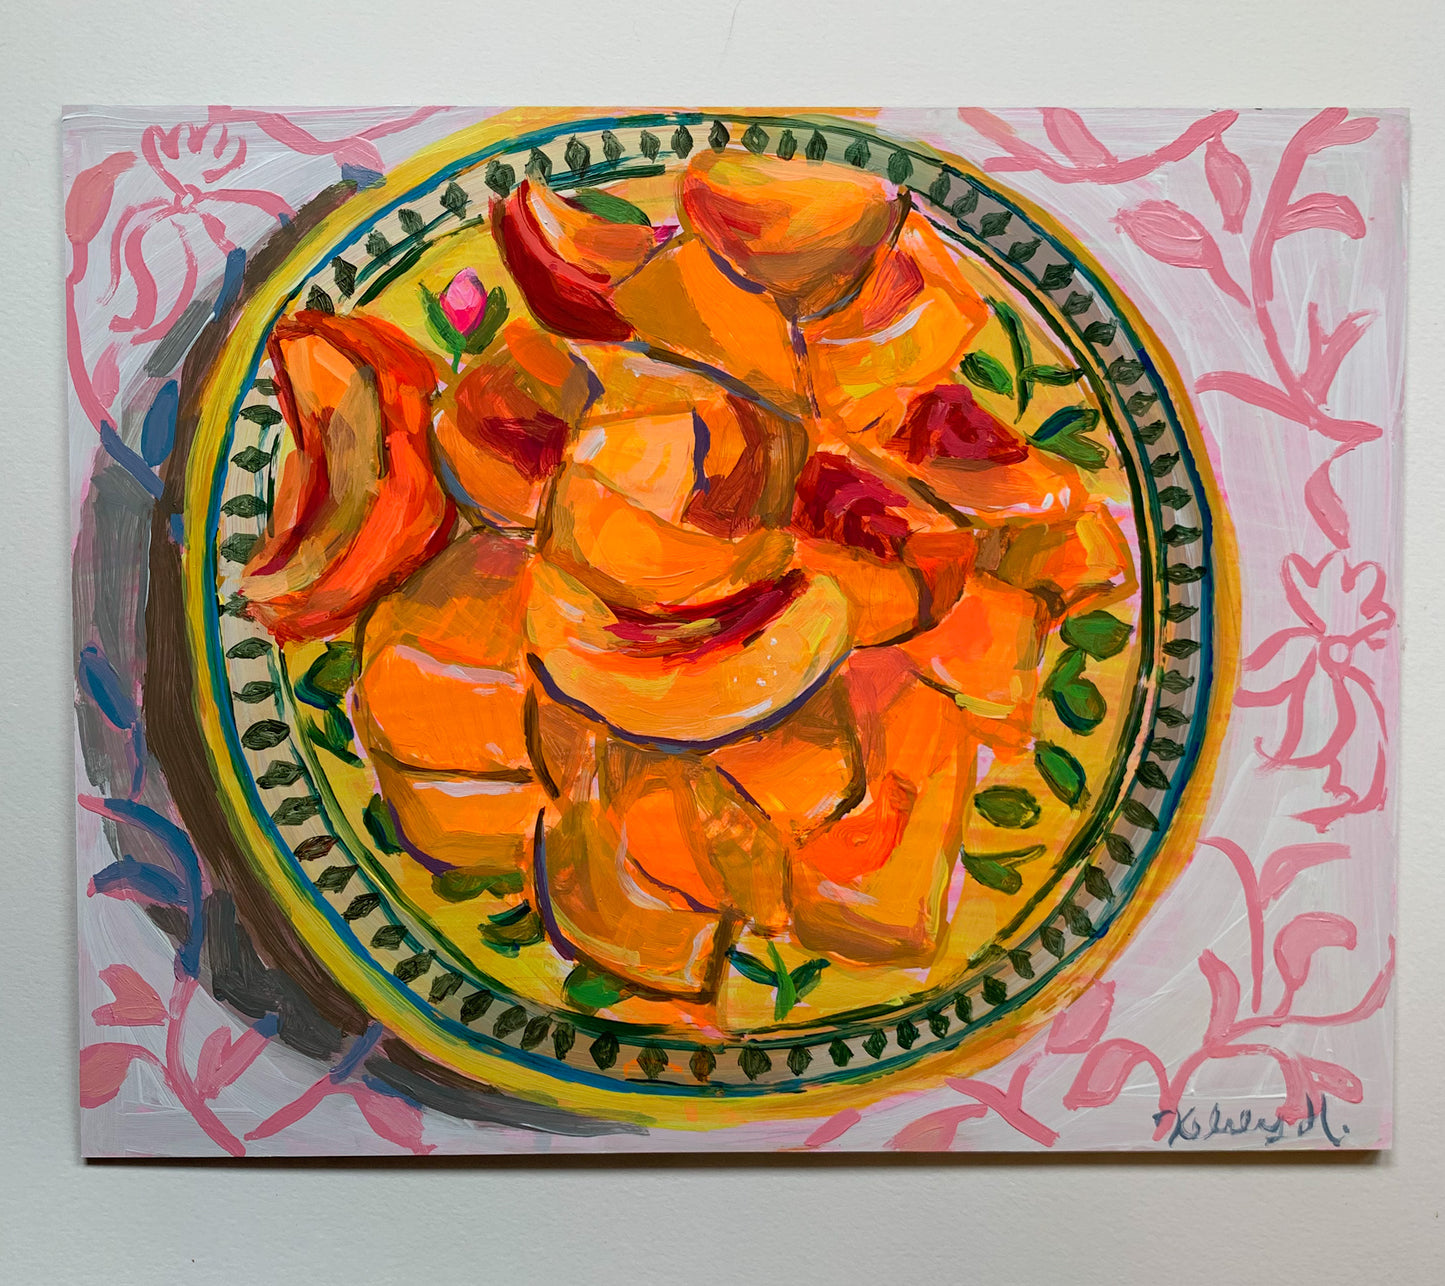 Sliced Peaches